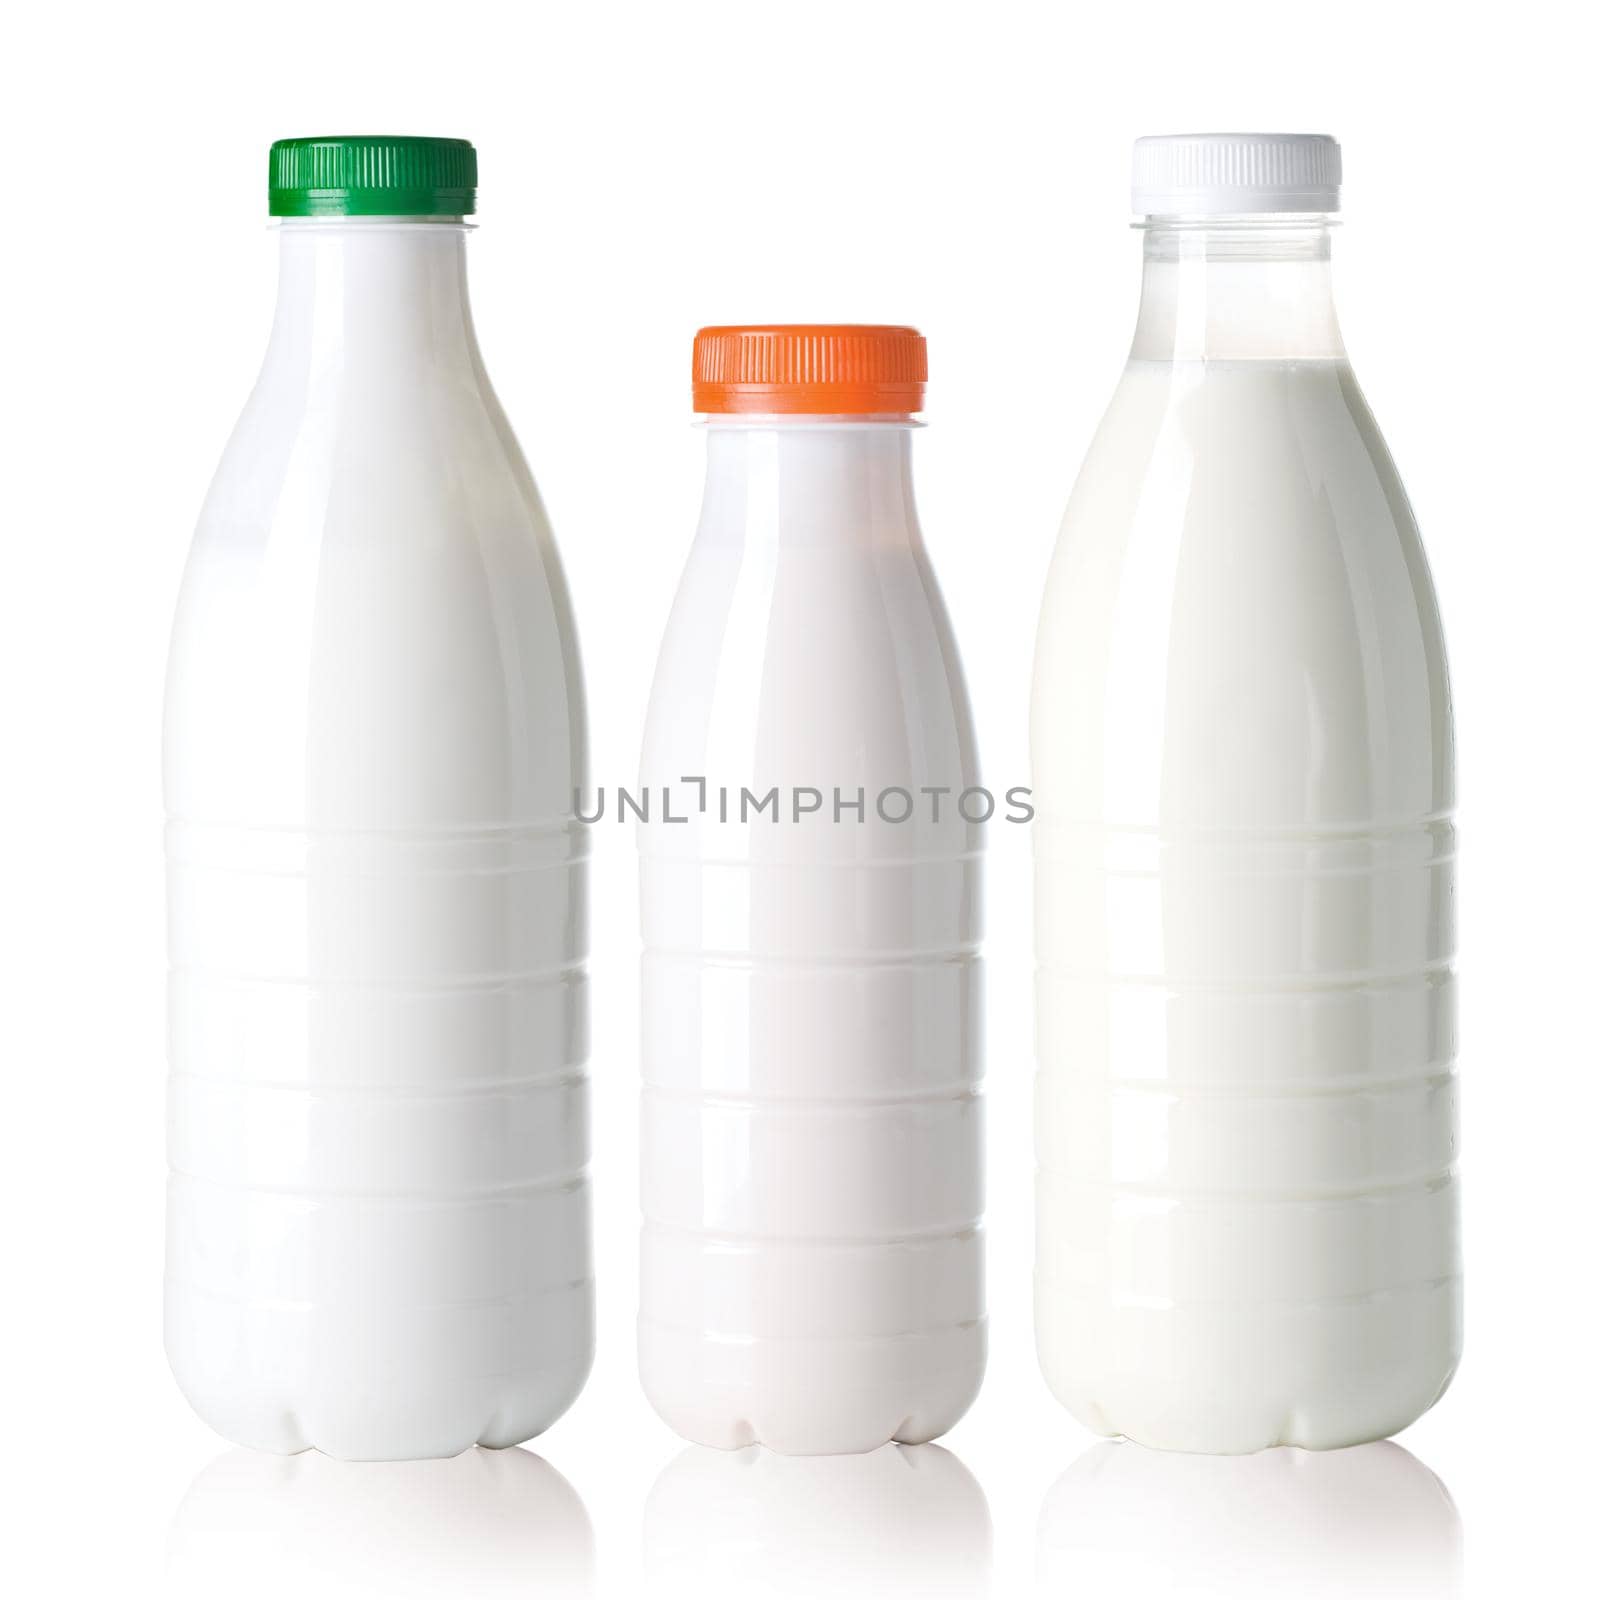 White milk bottle  isolated on white background